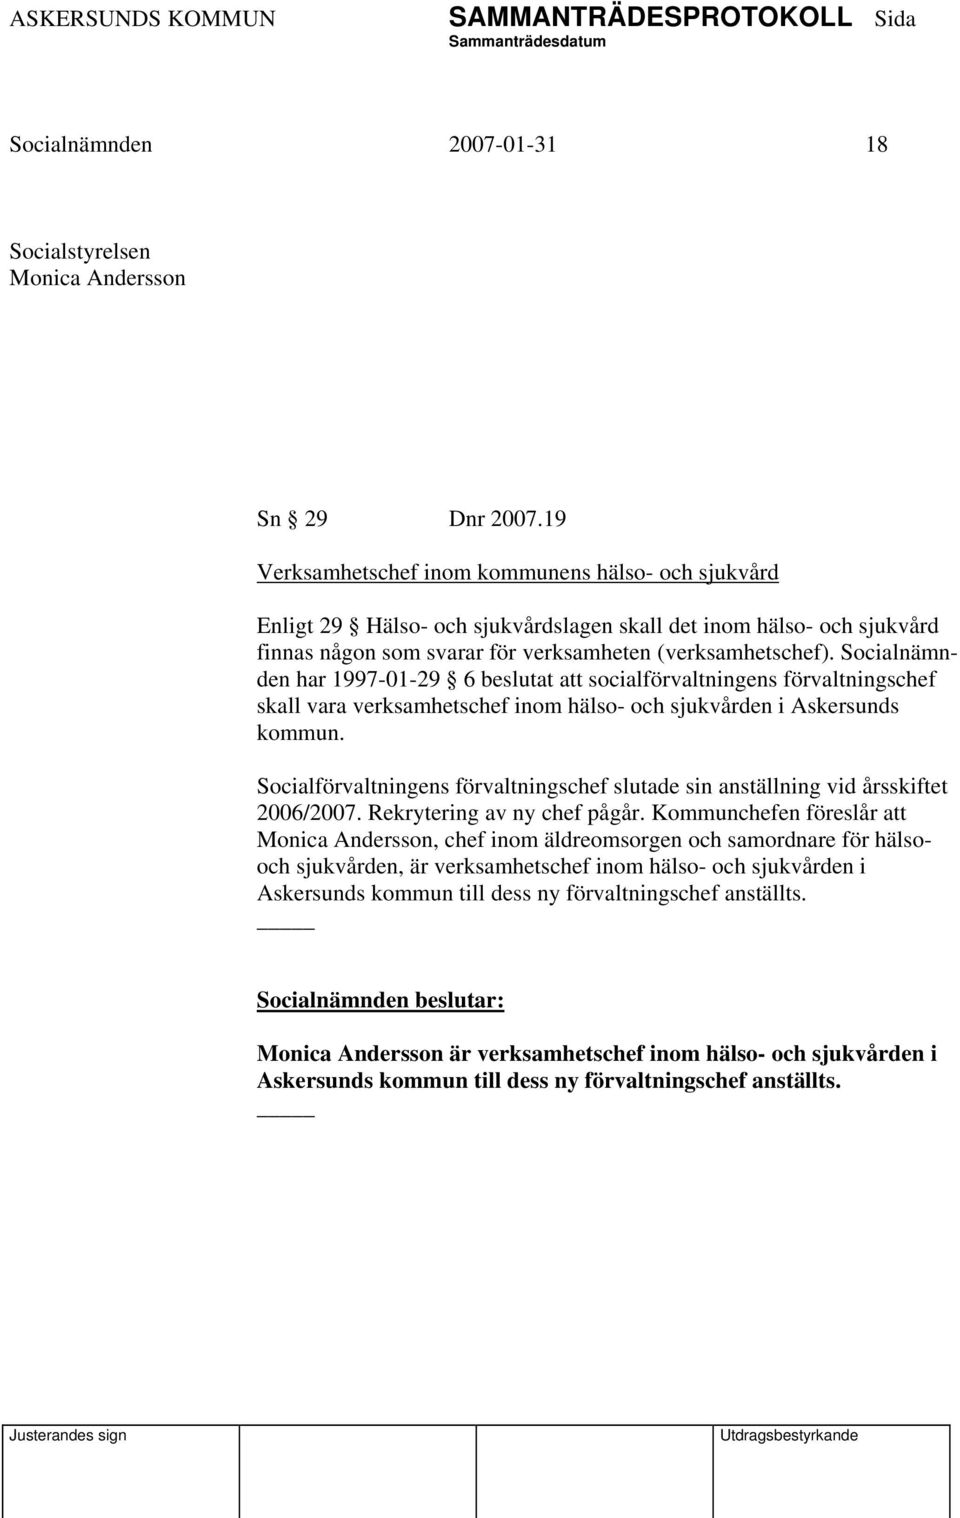 Socialnämnden har 1997-01-29 6 beslutat att socialförvaltningens förvaltningschef skall vara verksamhetschef inom hälso- och sjukvården i Askersunds kommun.